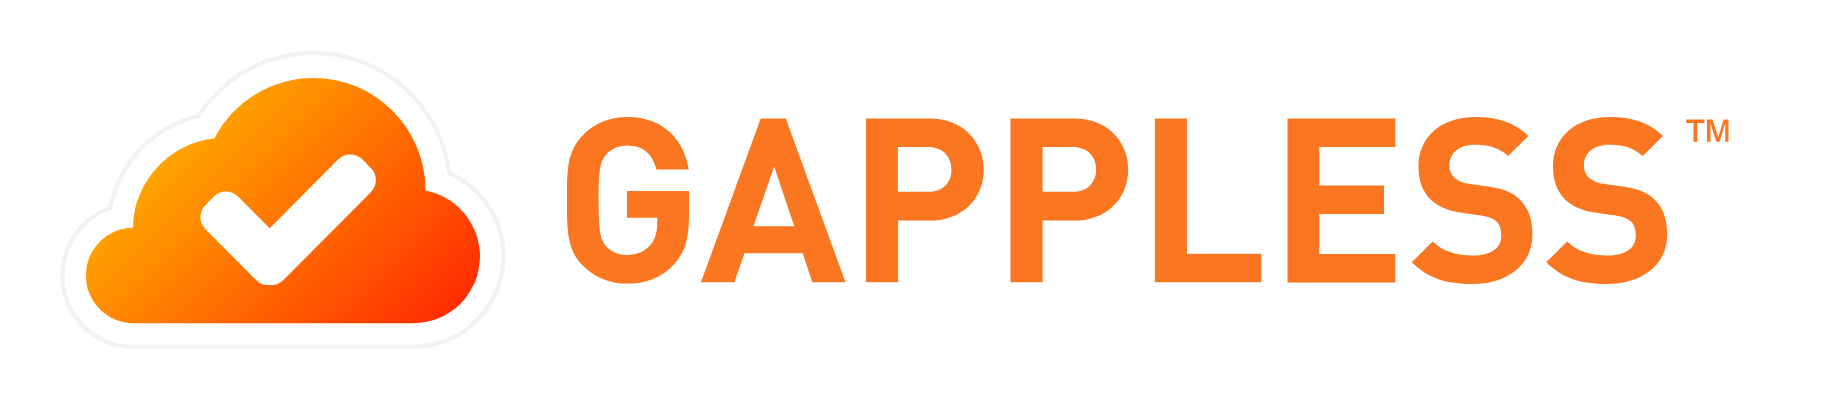 Samenwerking SPIE en Gappless gaat verder dan alleen digitaliseren logo